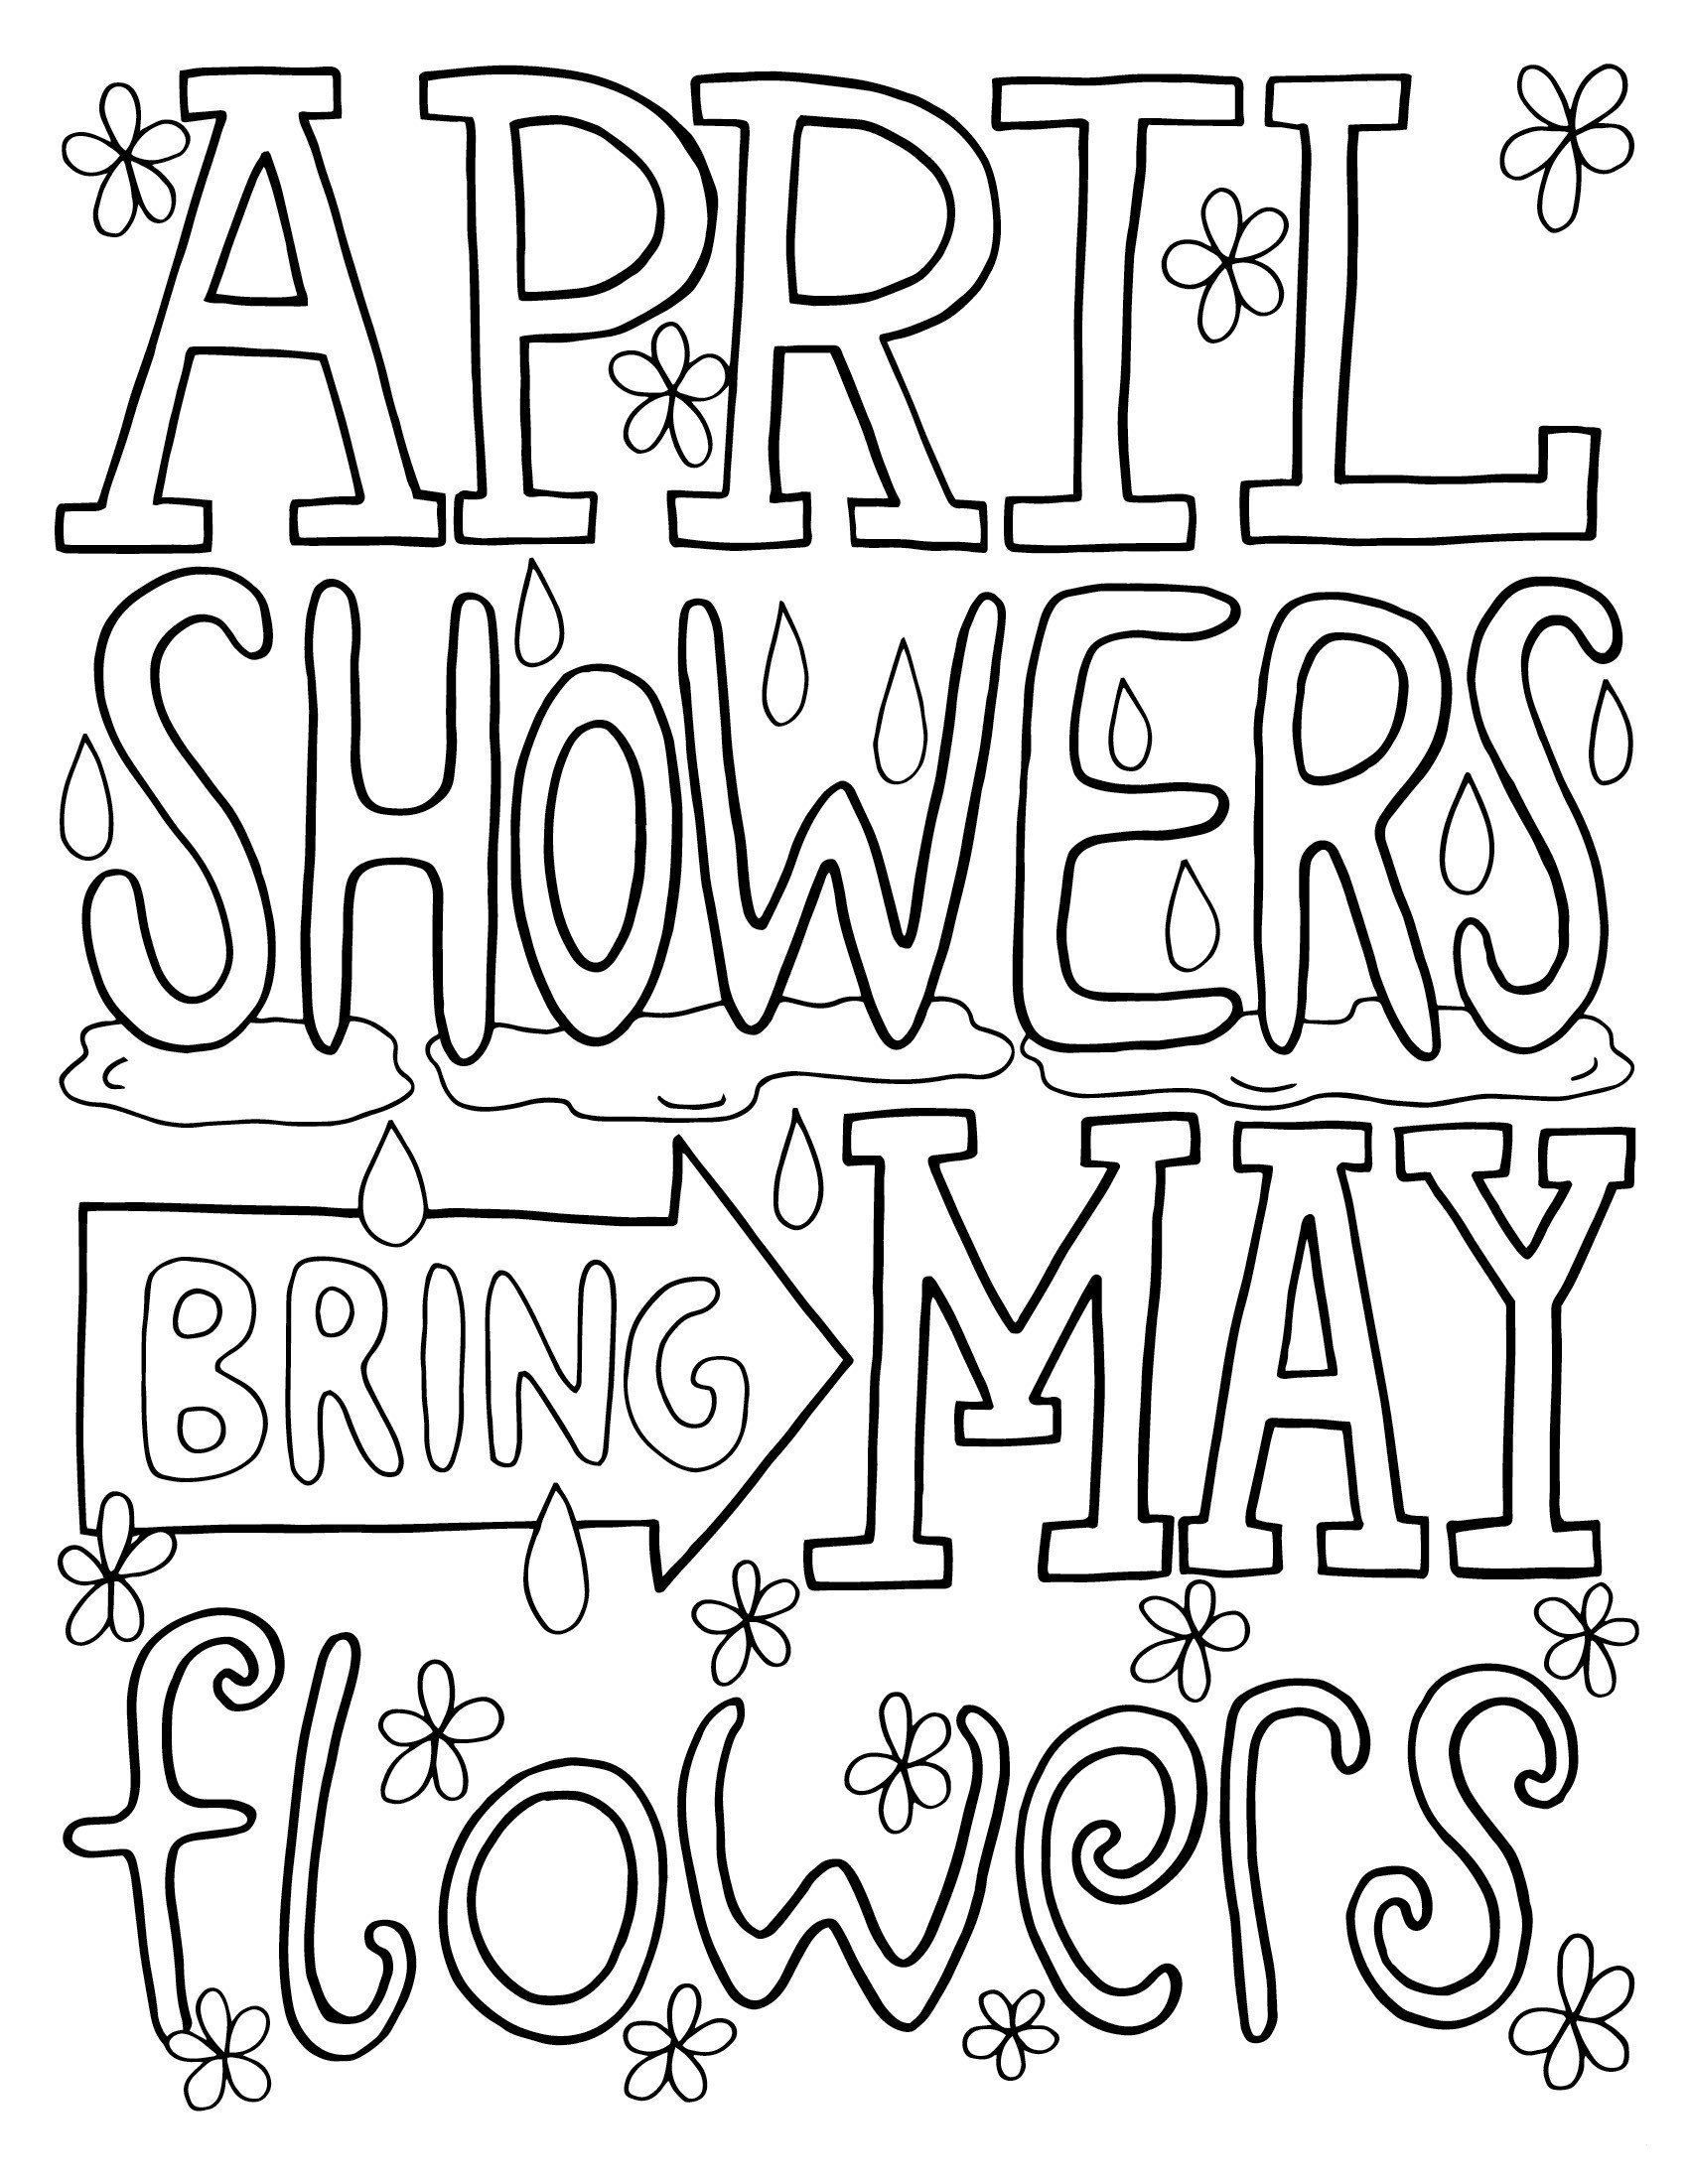 April Showerss